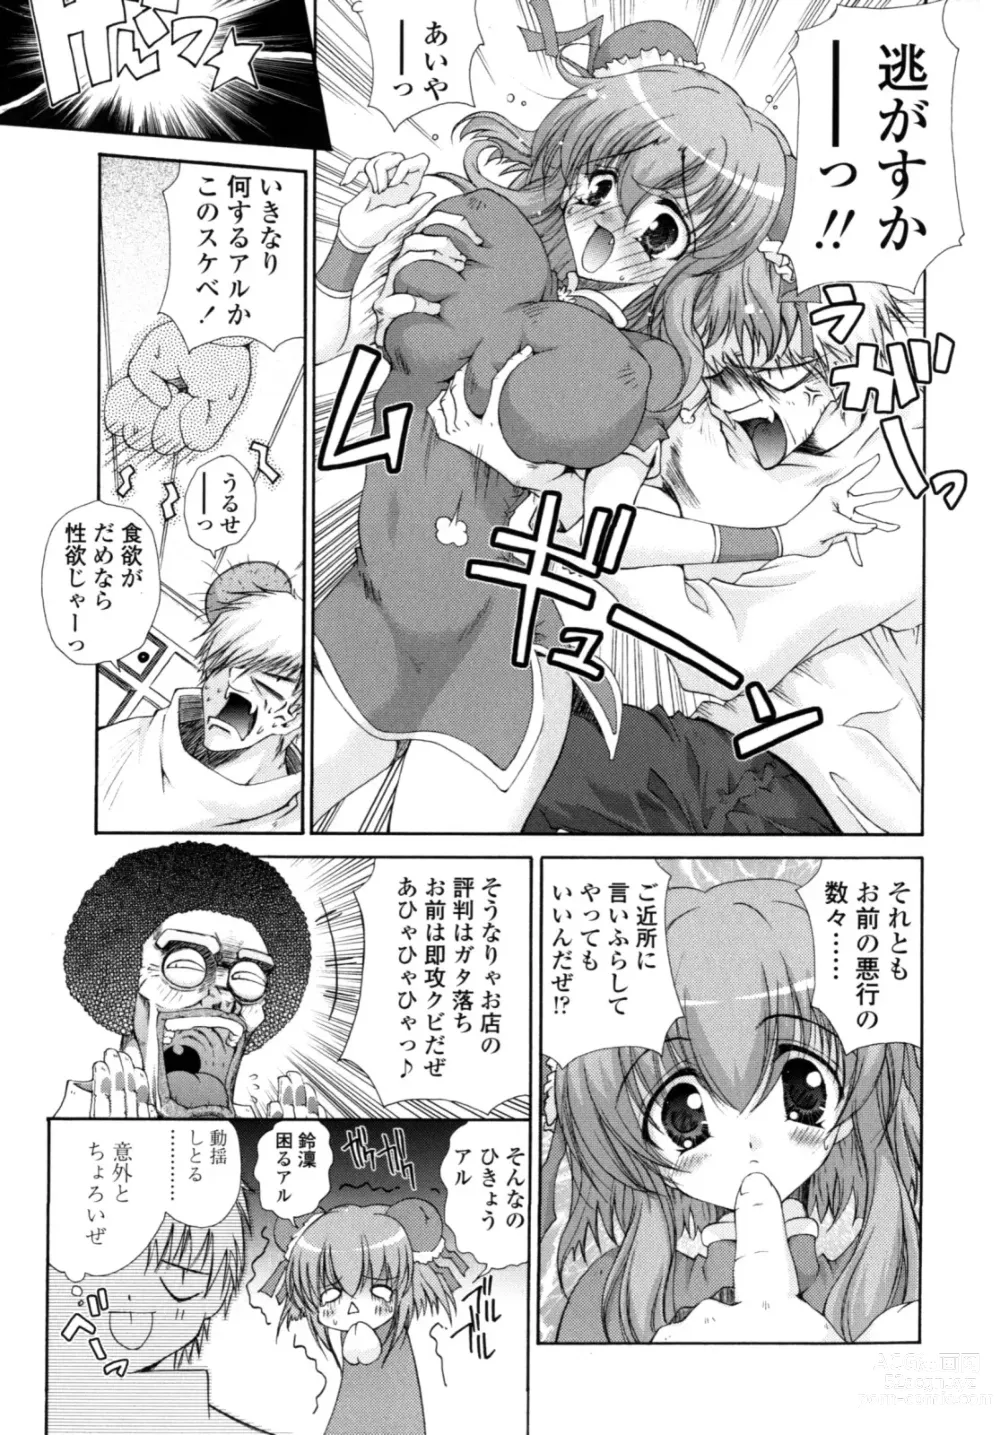 Page 178 of manga Yawaraka Peach